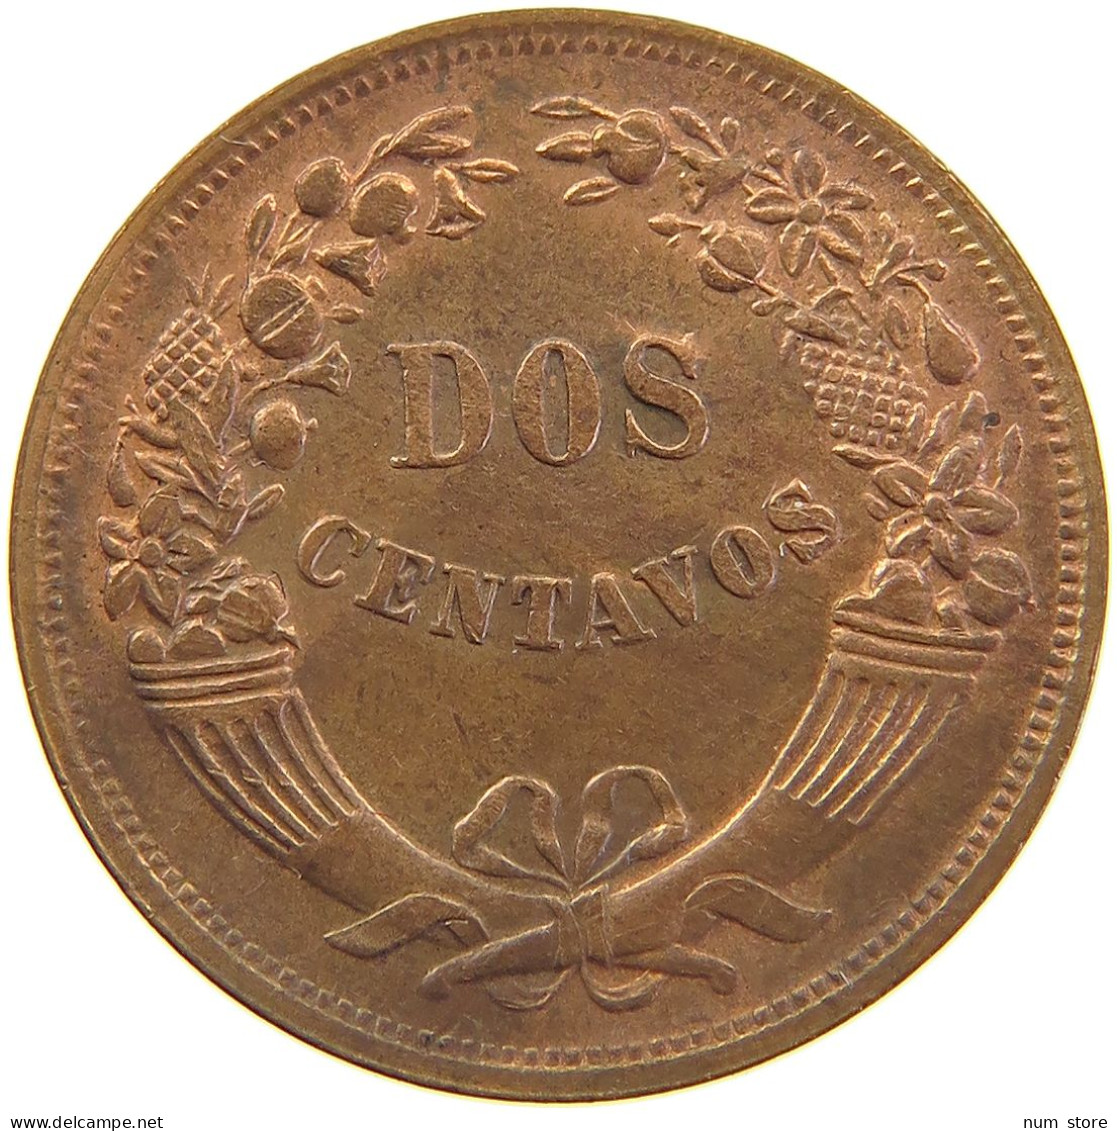 PERU 2 CENTAVOS 1947 #t030 0207 - Peru